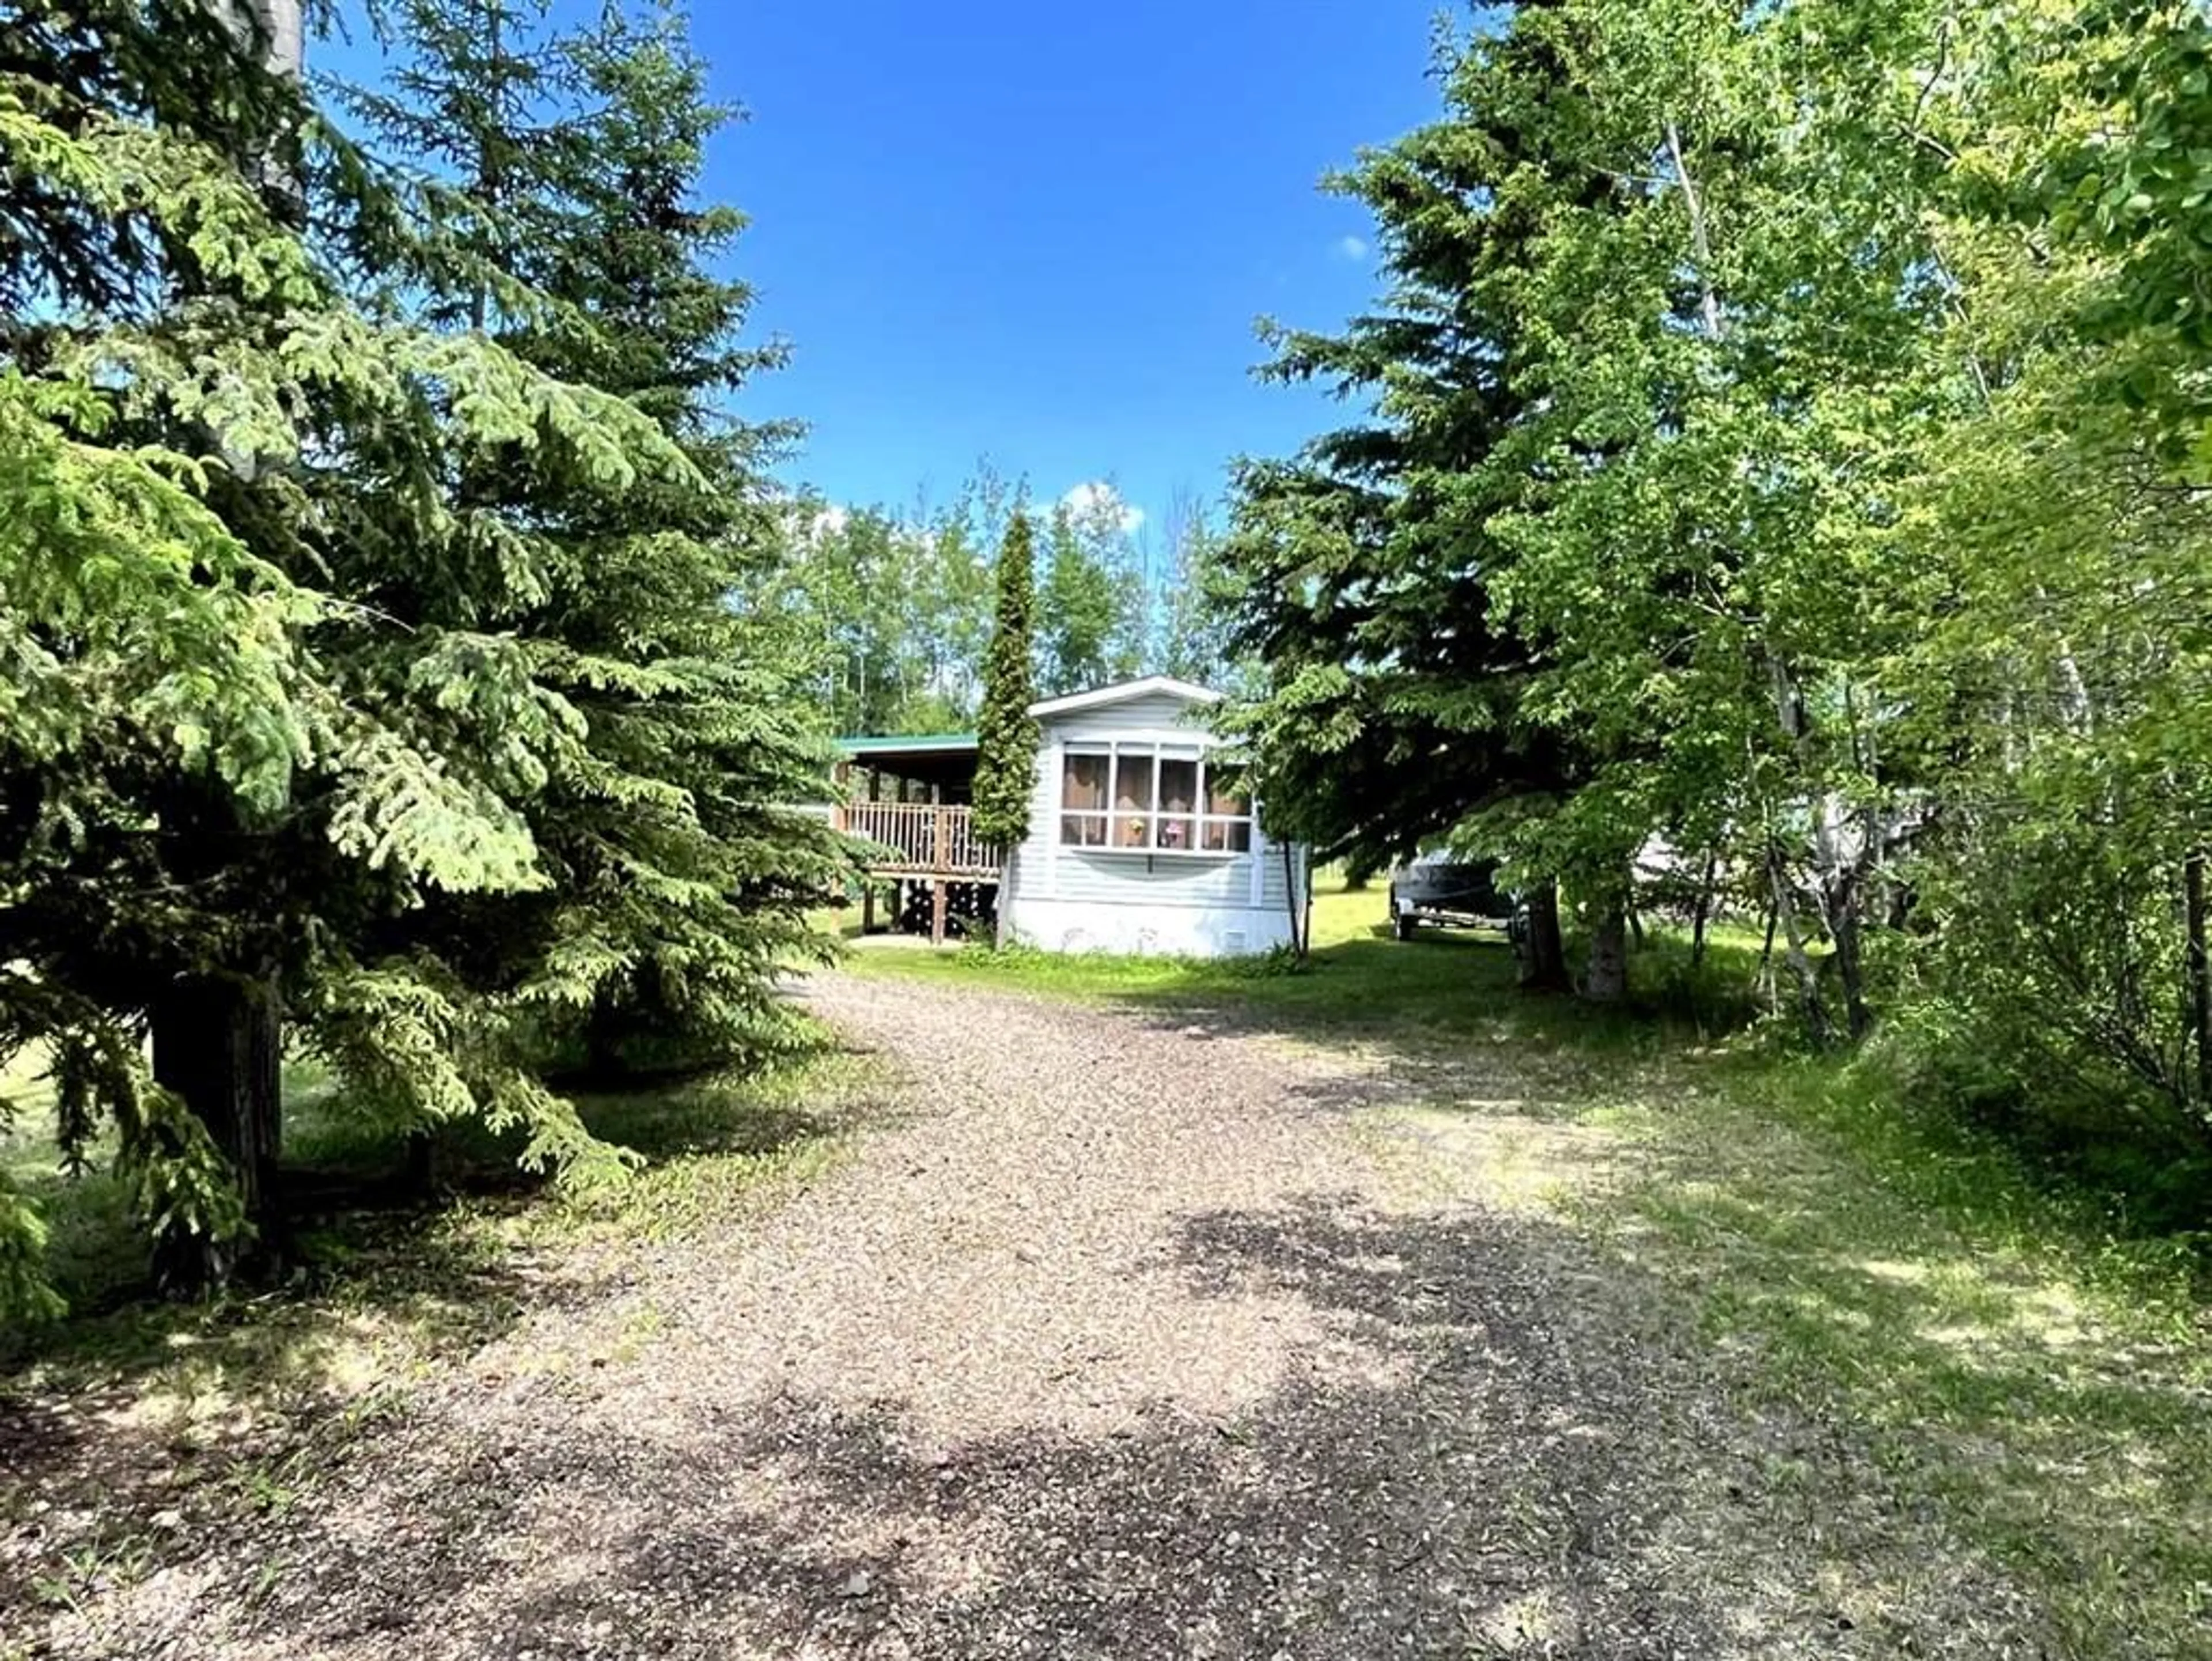 Cottage for 63303 867 Hwy #229, Rural Lac La Biche County Alberta T0A2C0